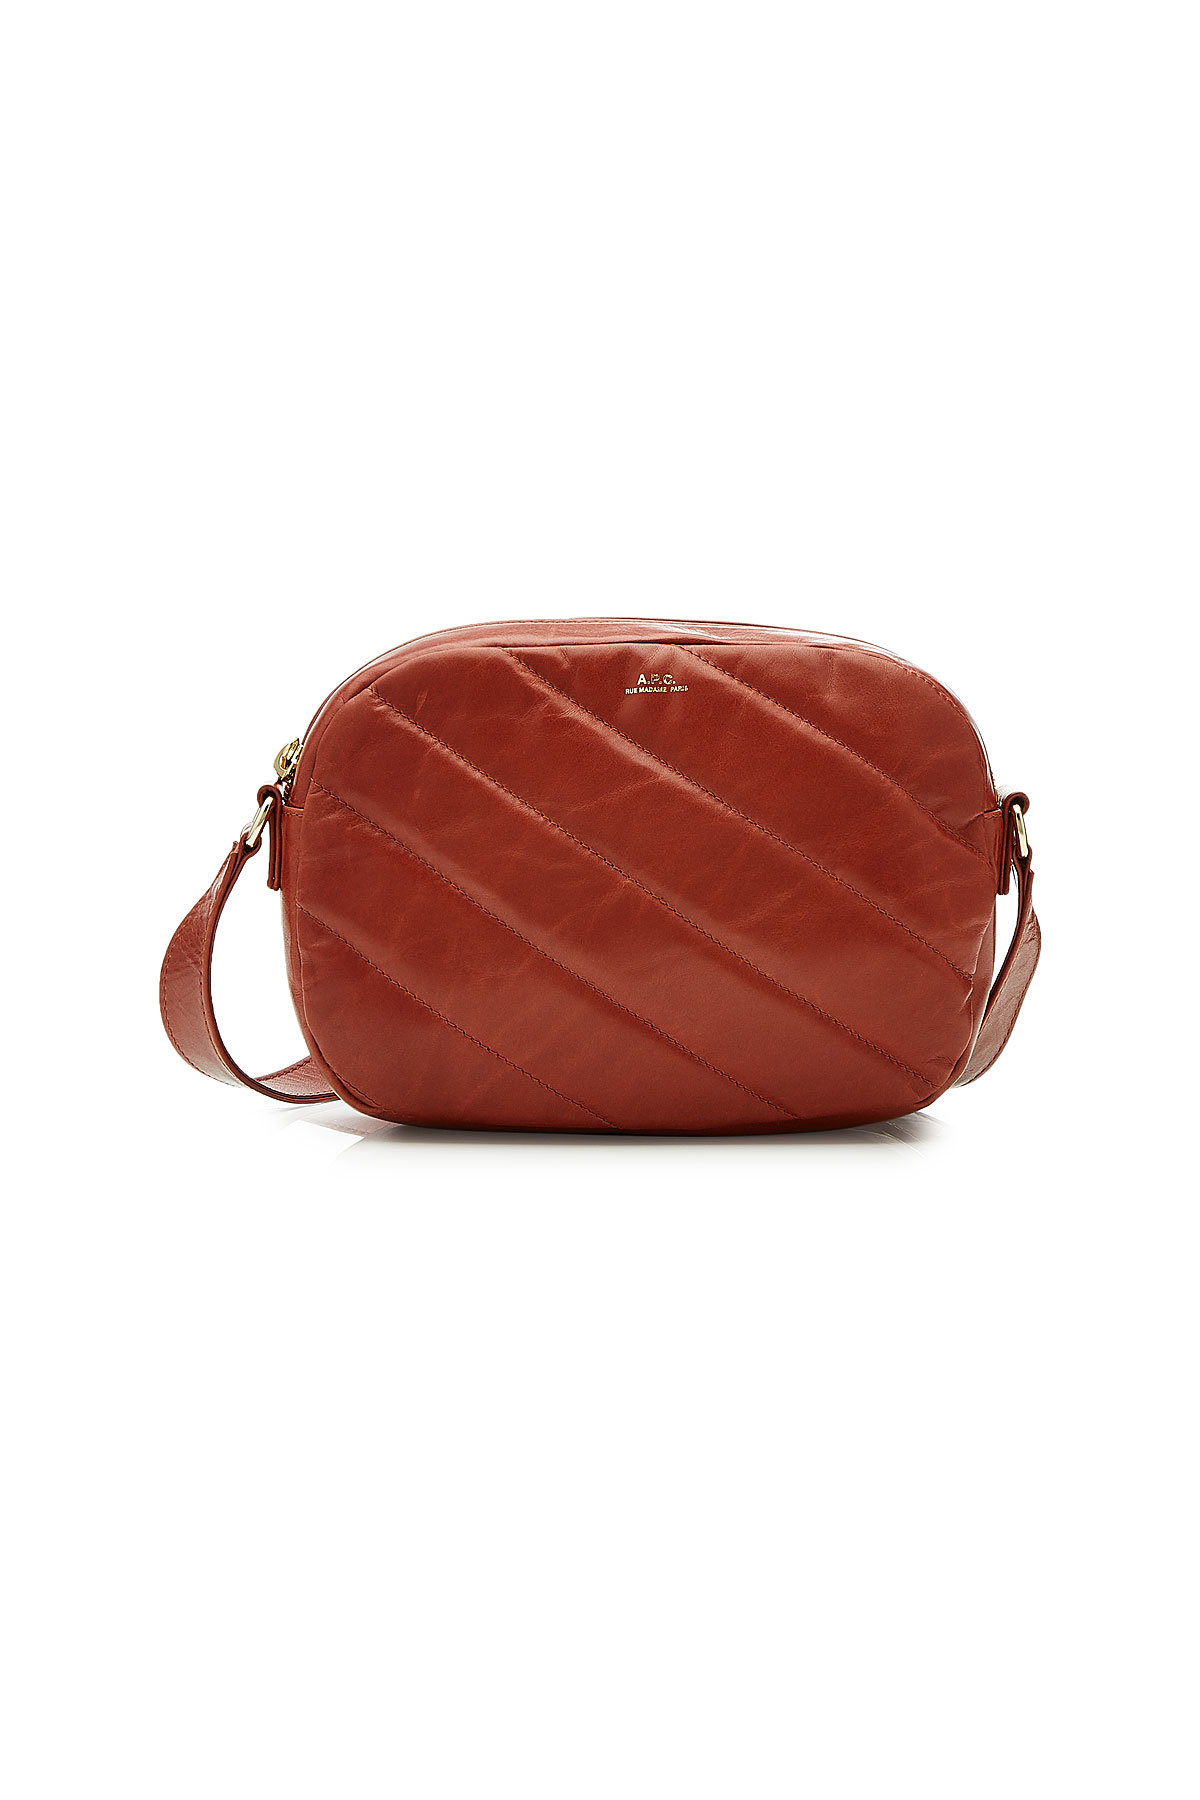 A.P.C. - Meryl Leather Shoulder Bag